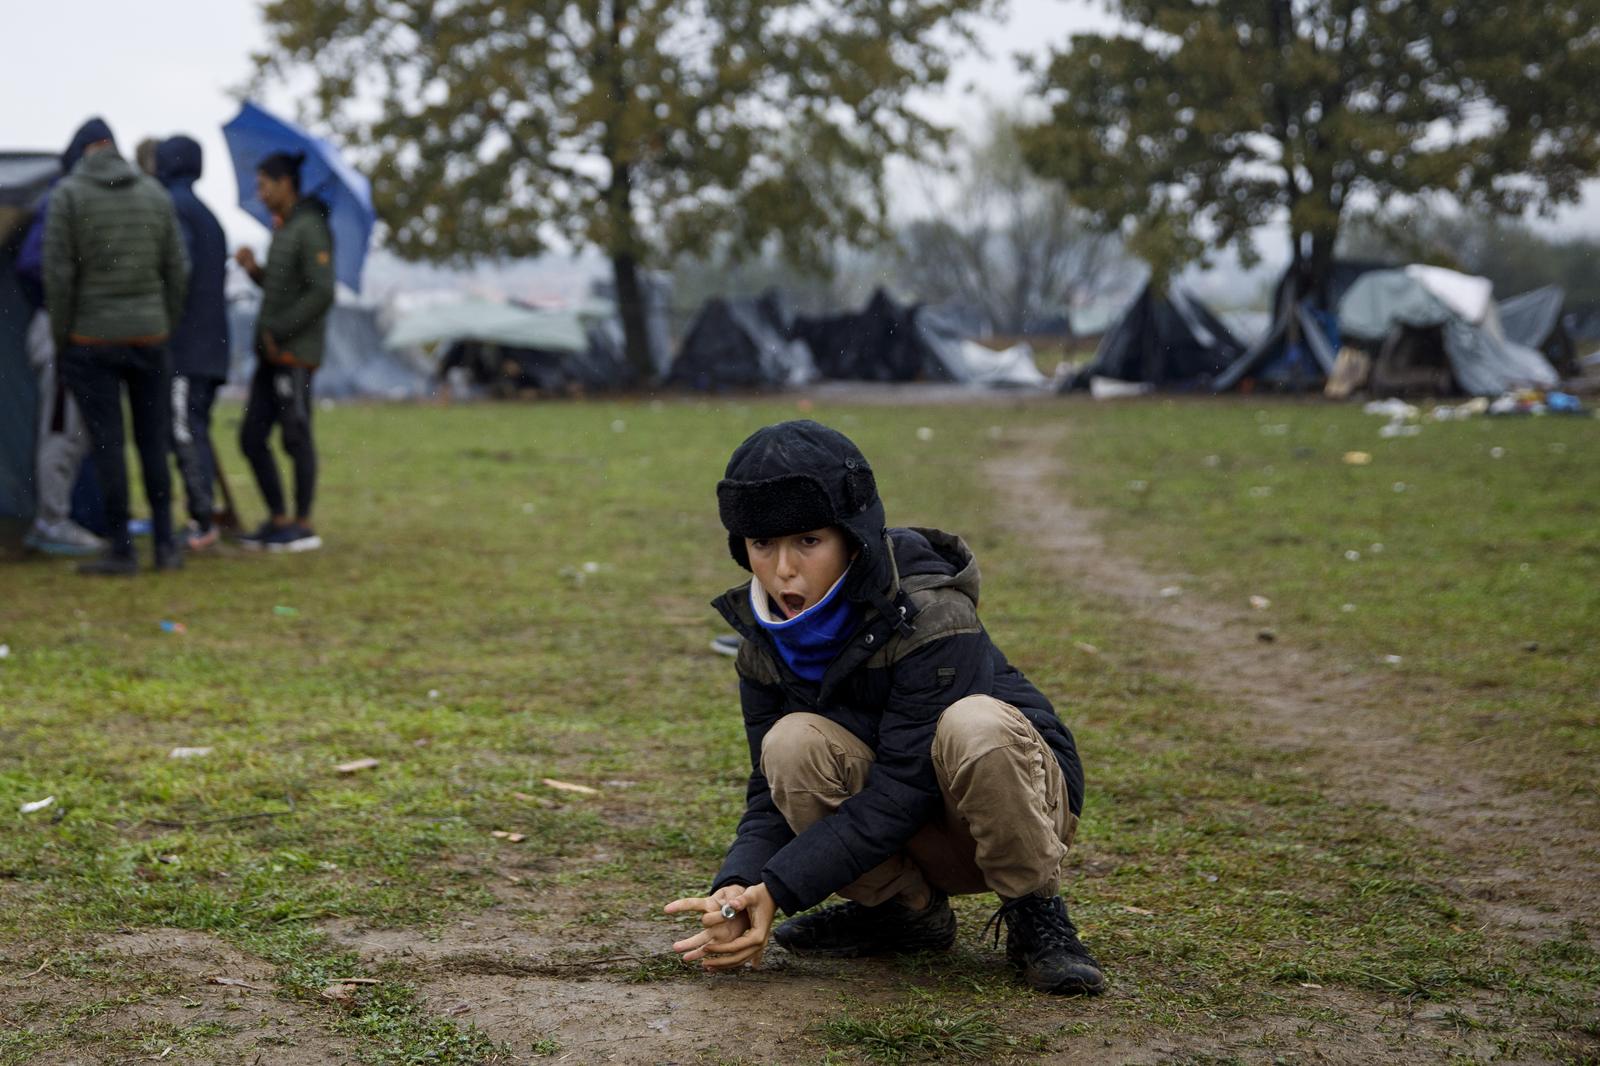 11.10.2021., Velika Kladusa, Bosna i Hercegovina - Stotine migranata, najvise porodice sa djecom nalazi se u novoformiranom improvizovanom satorskom naselju u blizini Velike Kladuse, svega nekoliko kilometara od granice sa Hrvatskom. Svi oni odbijaju ulazak u migrantske centre i u nadi iscekuju ljepse vrijeme pa da jos jednom pokusaju preci granicu i ostvare cilj odlaska u zemlje Evropske unije. Mnogi od njih su nekoliko puta pokusali preci granicu, te su nakon susreta sa granicnom policijom vraceni isprebijani i goli. U kampu nema niti jedna agencija ili organizacija koja pomaze ovim migrantima. Njih oko 300 spava na otvorenom, gdje se jutarnje temperature krecu oko 0 stepeni. 

 Photo: Armin Durgut/PIXSELL